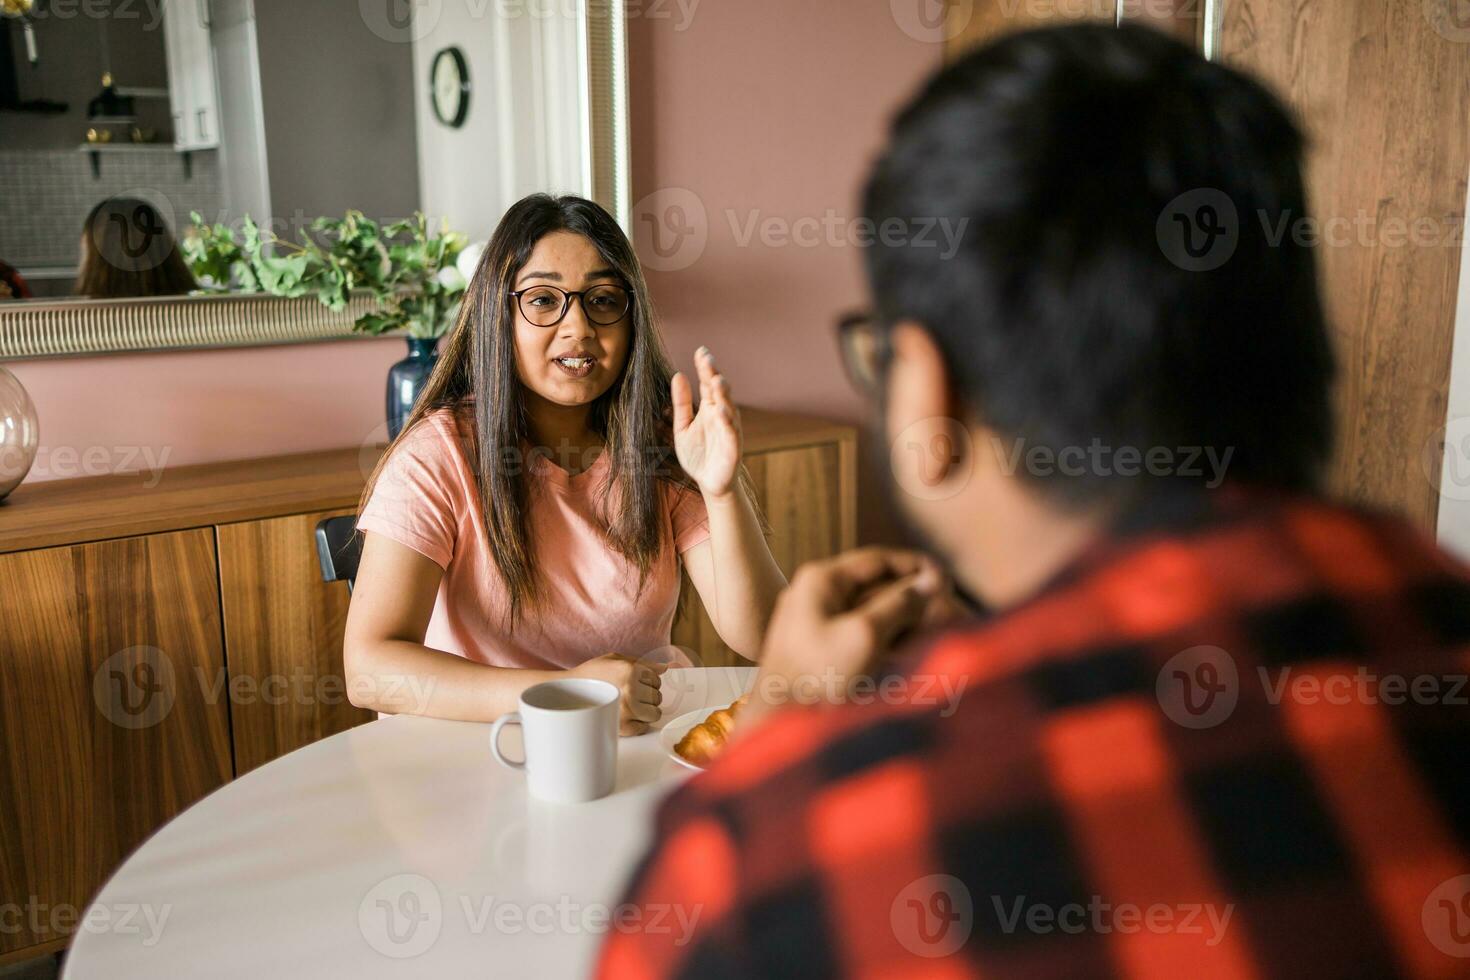 gelukkig Indisch paar hebben ontbijt en klein praten samen in de keuken - vriendschap, dating en familie foto